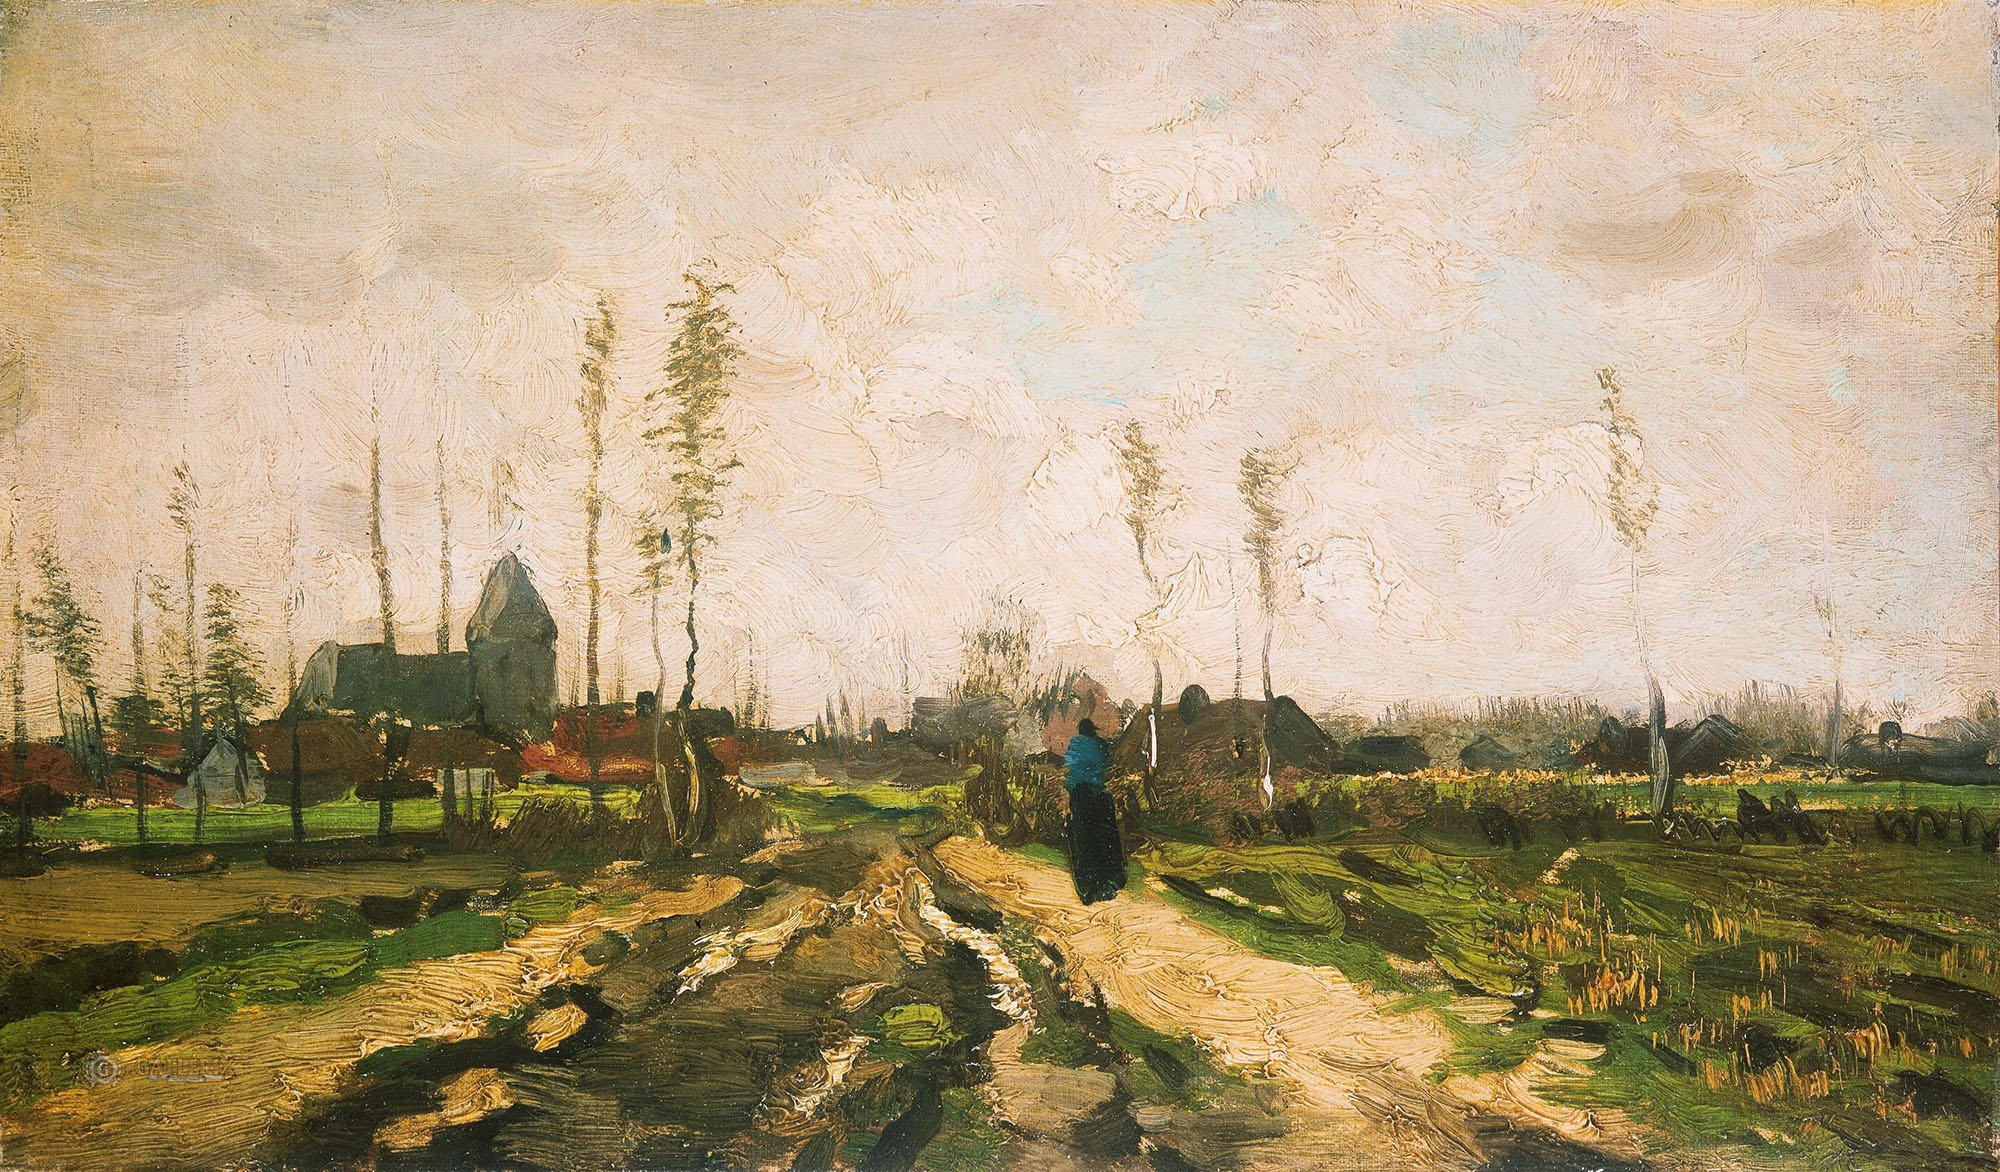 Винсент Ван гог. "Пейзаж с церковью и фермами". 1885. Частная коллекция.